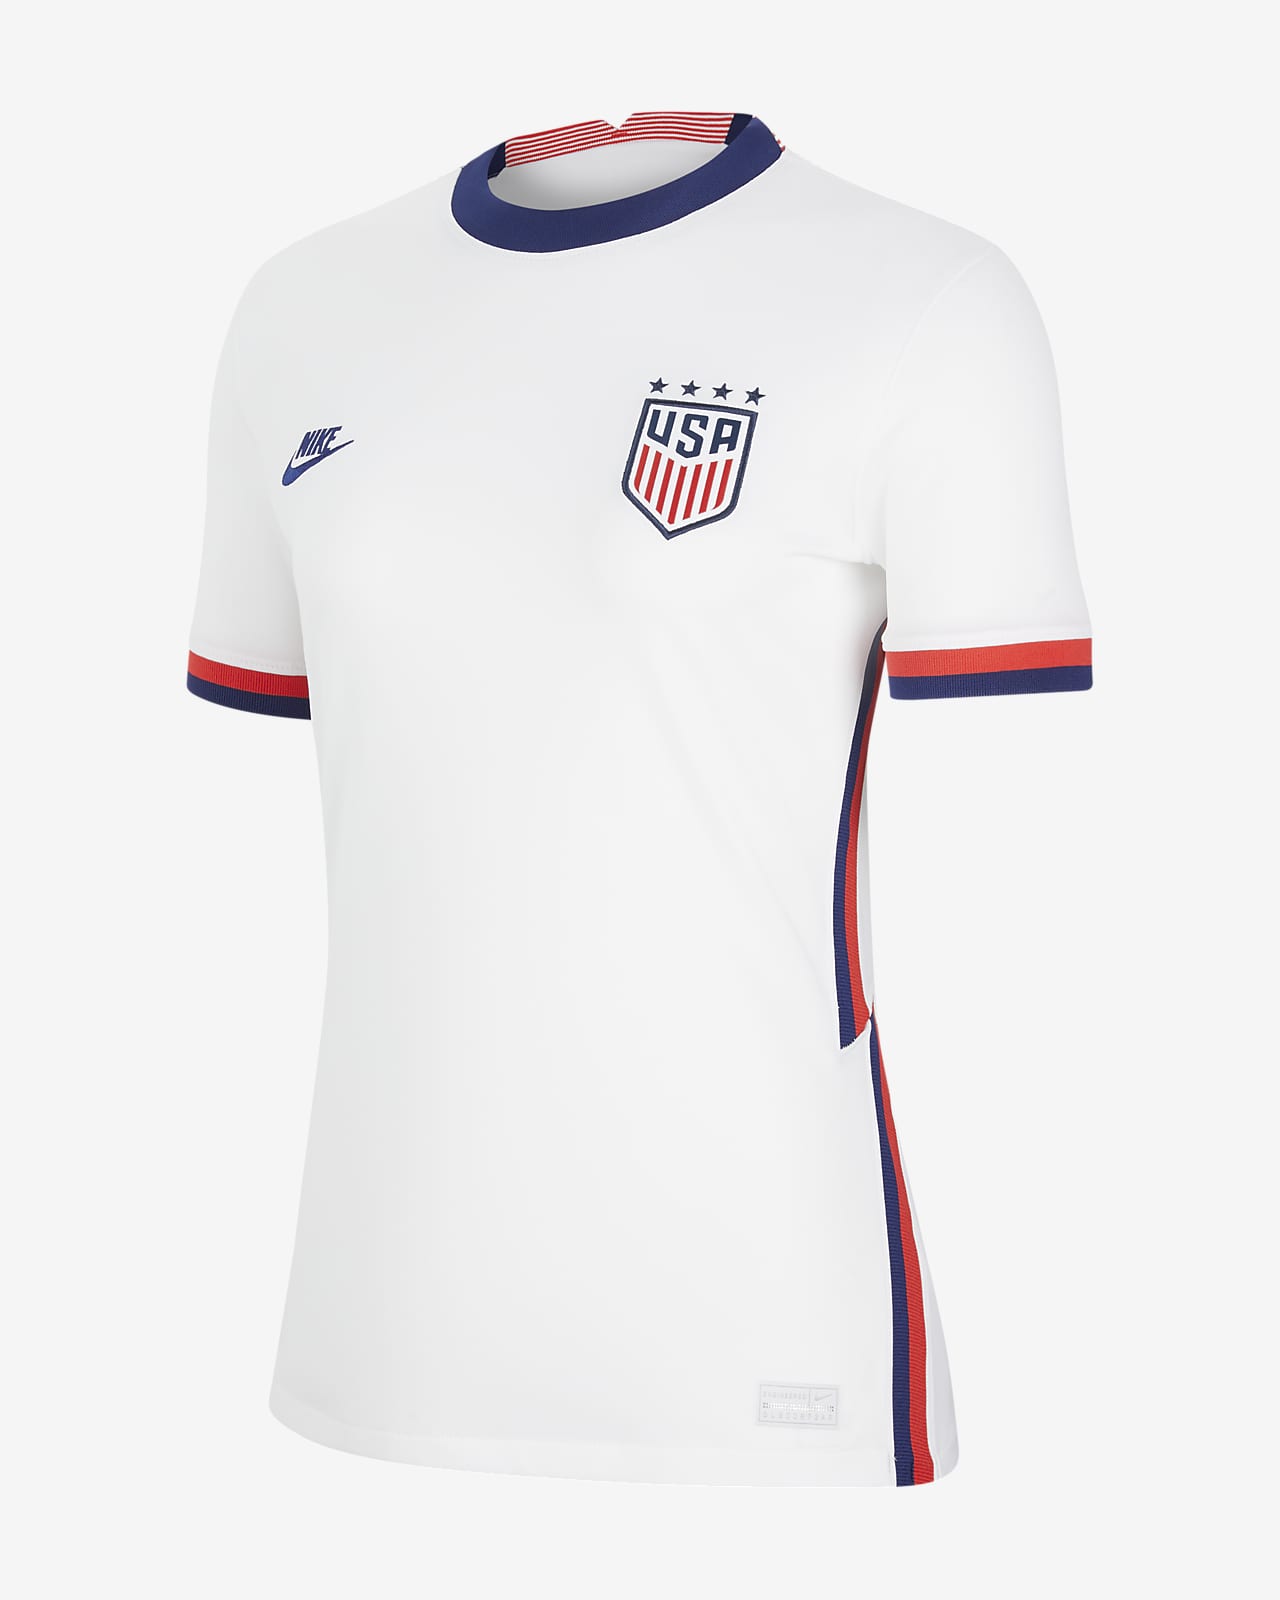 Stratford on Avon cicatriz Increíble Camiseta de fútbol de local para mujer Stadium de los EE. UU. 2020  (4-Star). Nike.com